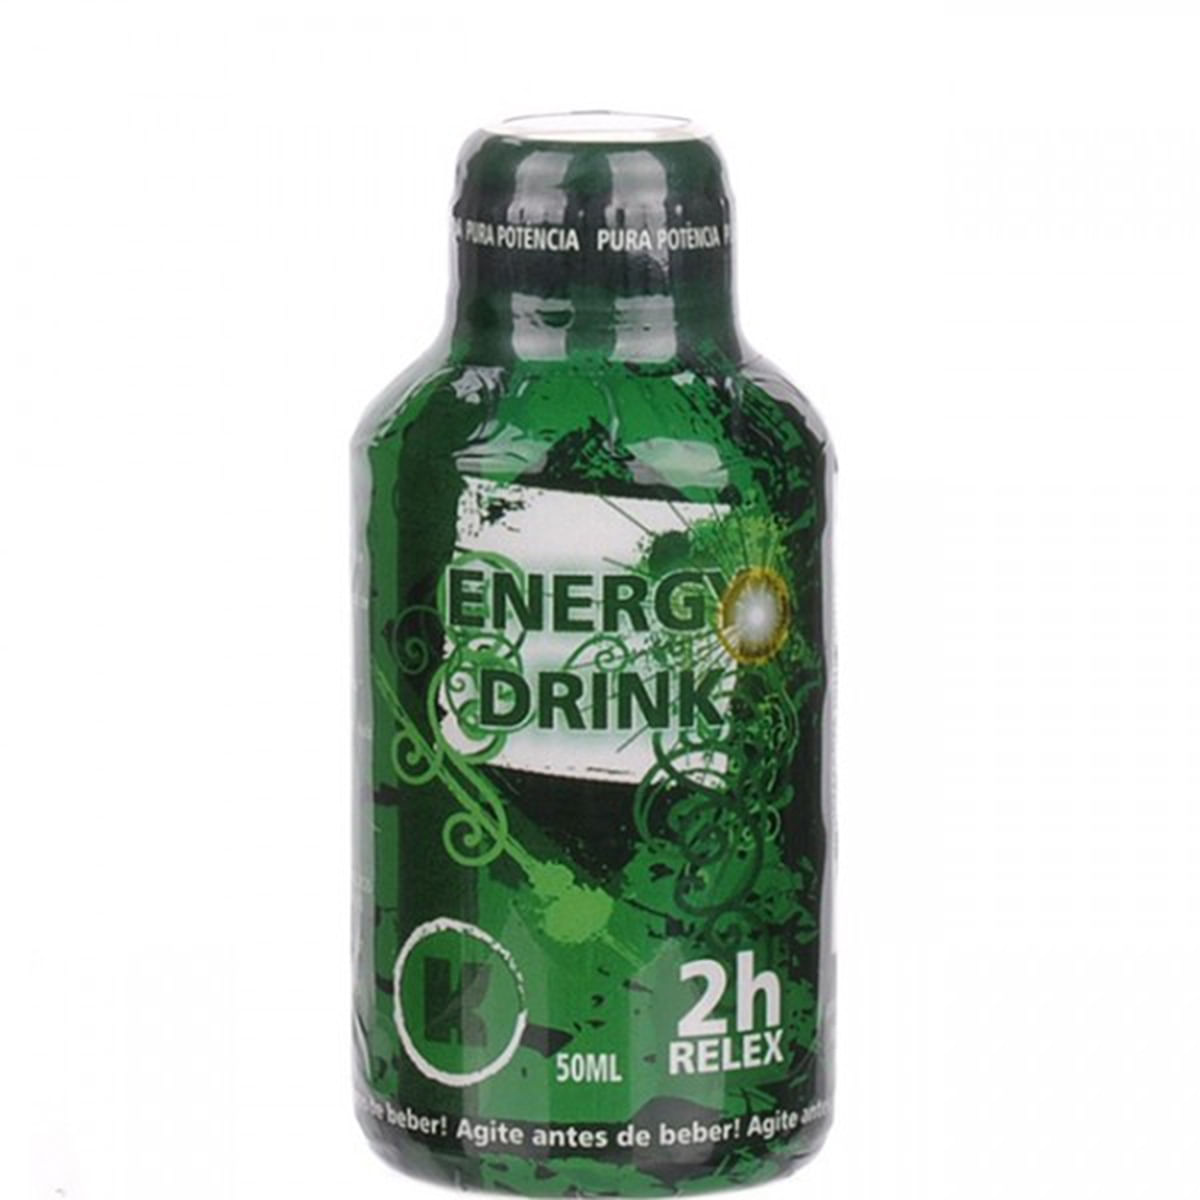 Energy Drink 2h Relex Afrodisíaco Pura Potencia 50ml